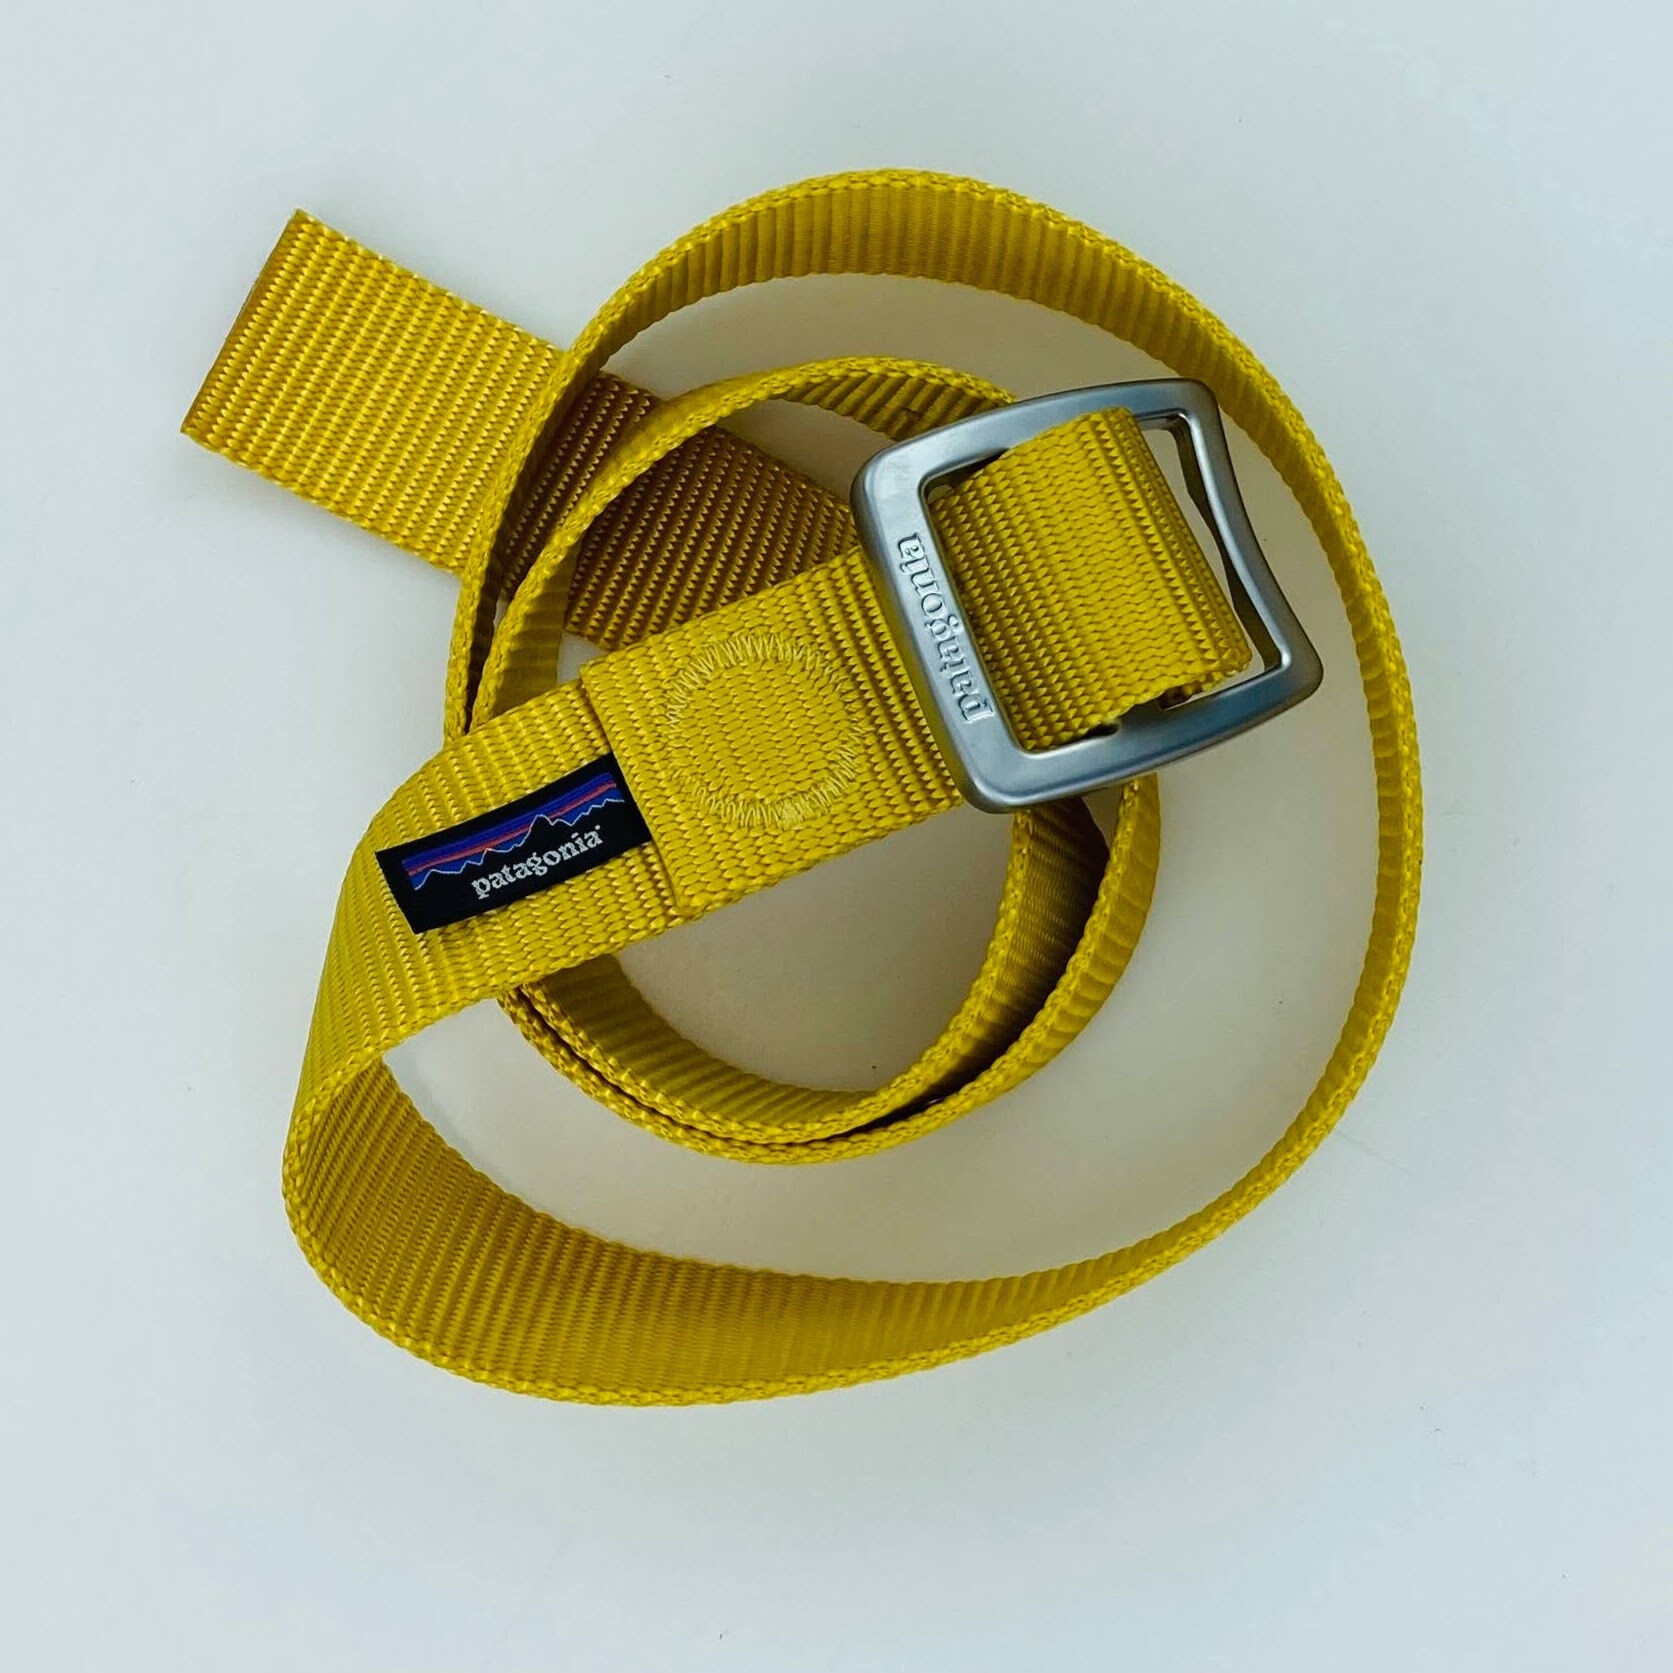 Patagonia Tech Web Belt - Cintura di seconda mano - Giallo - Taglia unica | Hardloop